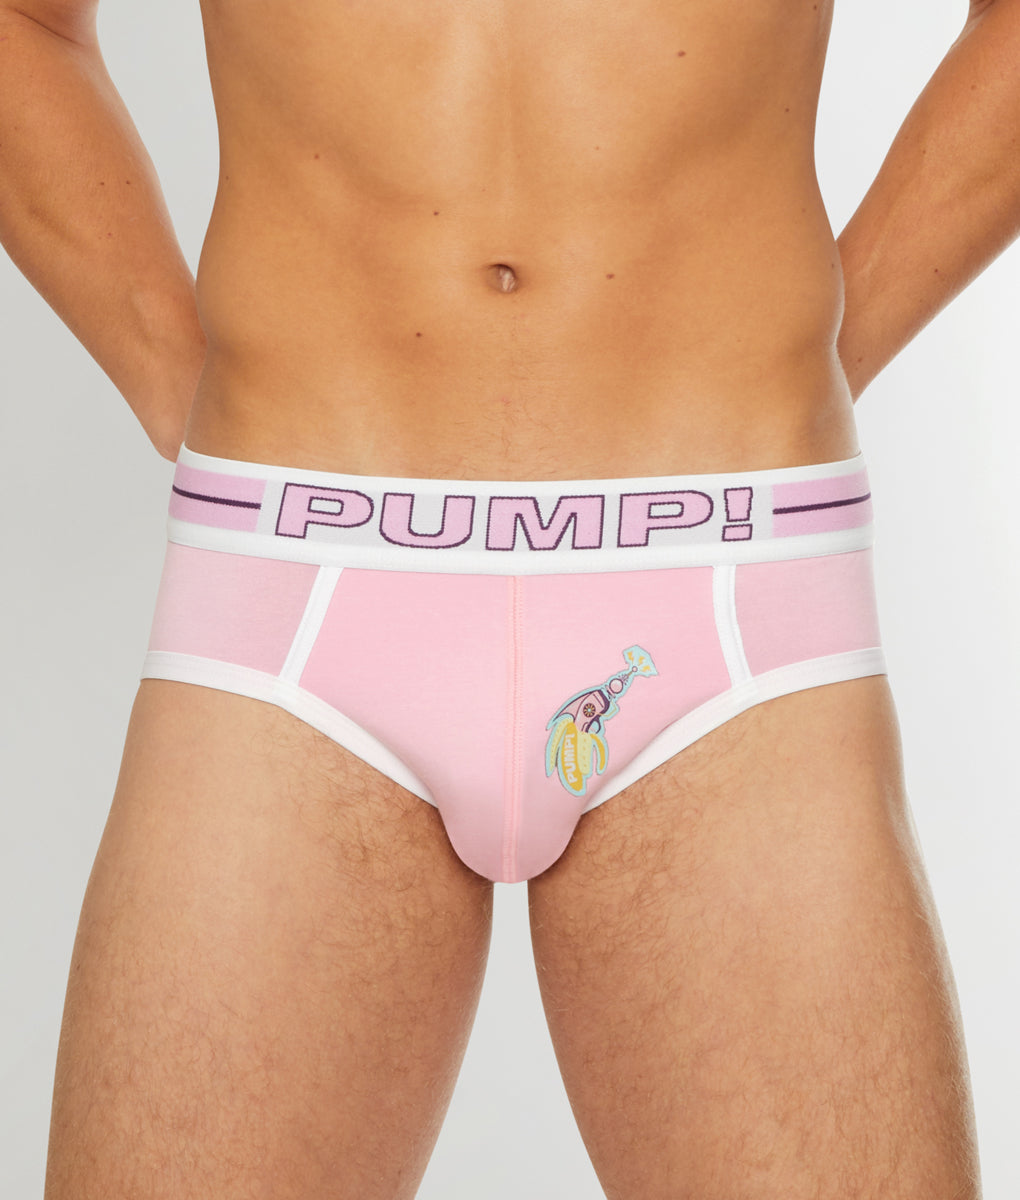 PUMP Underwear - PUMP Underwear added a new photo.